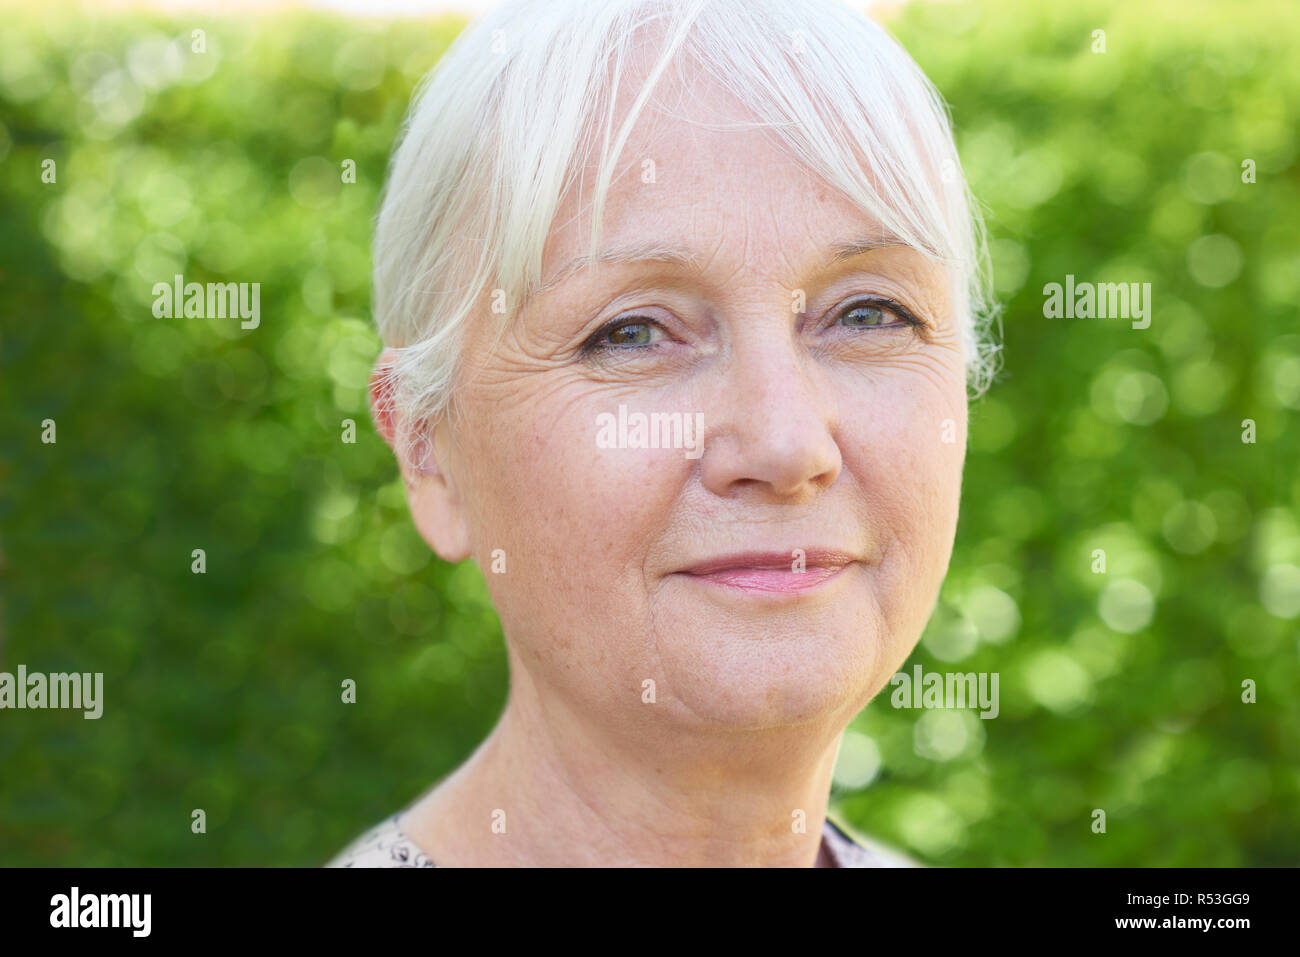 La tête et les épaules de plein air Portrait of Senior Woman grave Banque D'Images